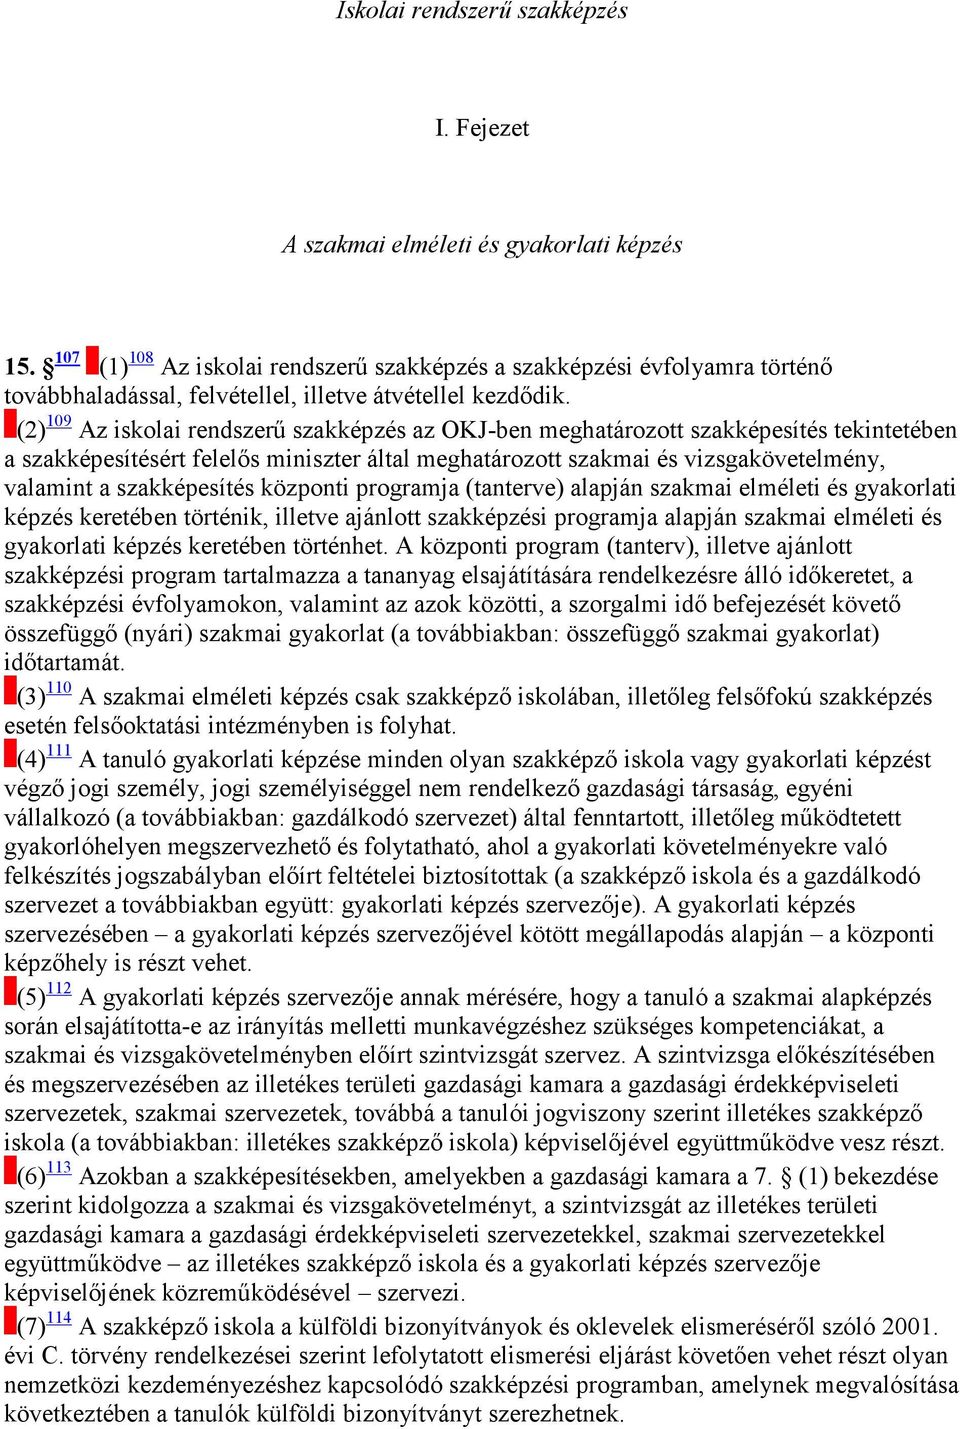 (2) 109 Az iskolai rendszerő szakképzés az OKJ-ben meghatározott szakképesítés tekintetében a szakképesítésért felelıs miniszter által meghatározott szakmai és vizsgakövetelmény, valamint a